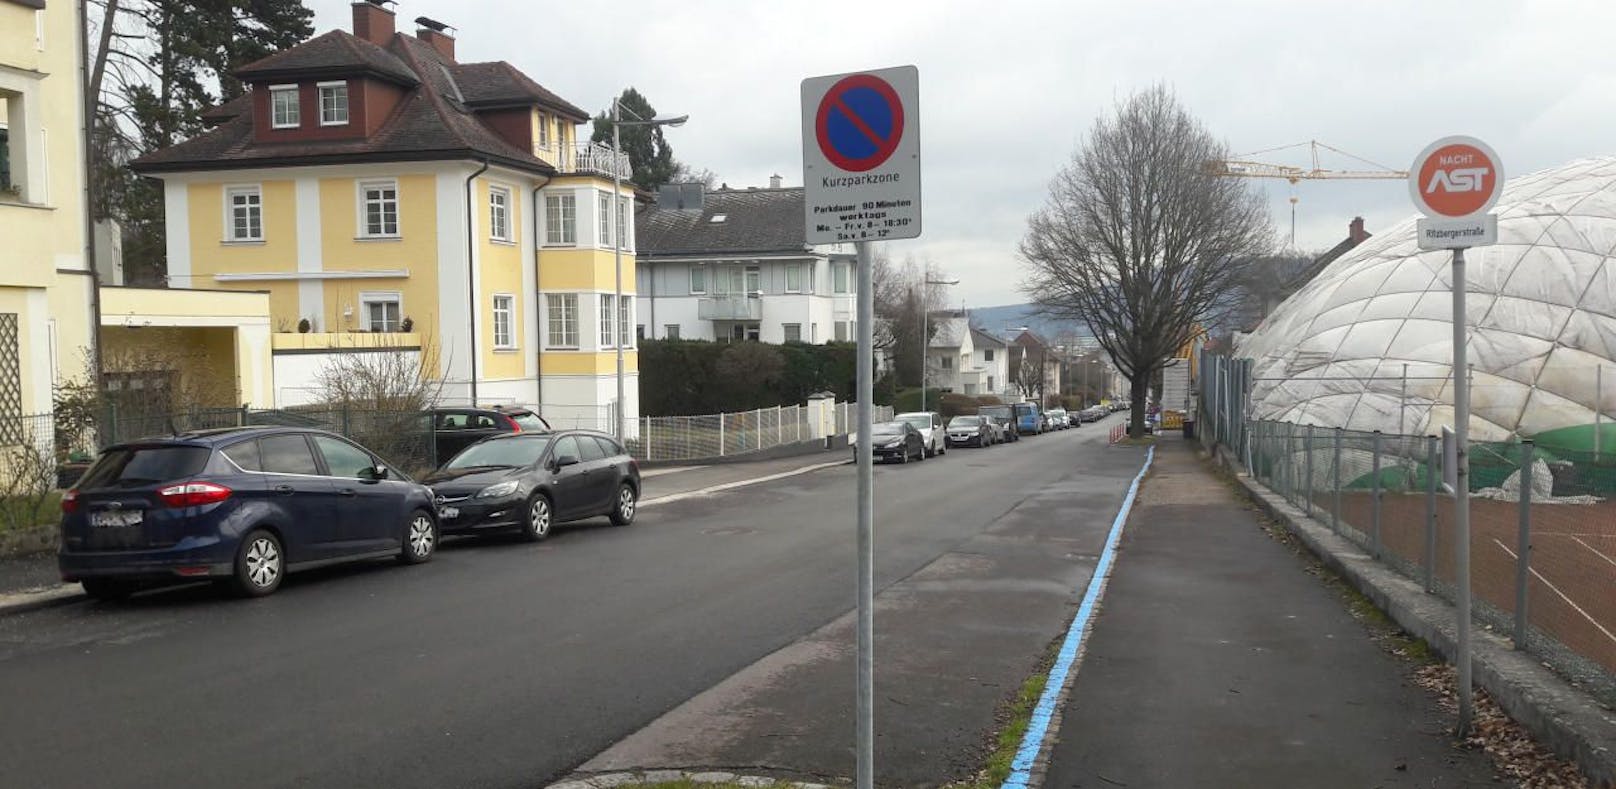 In Linz wird noch überlegt, ob die Kurzparkzonen gebührenpflichtig bleiben.